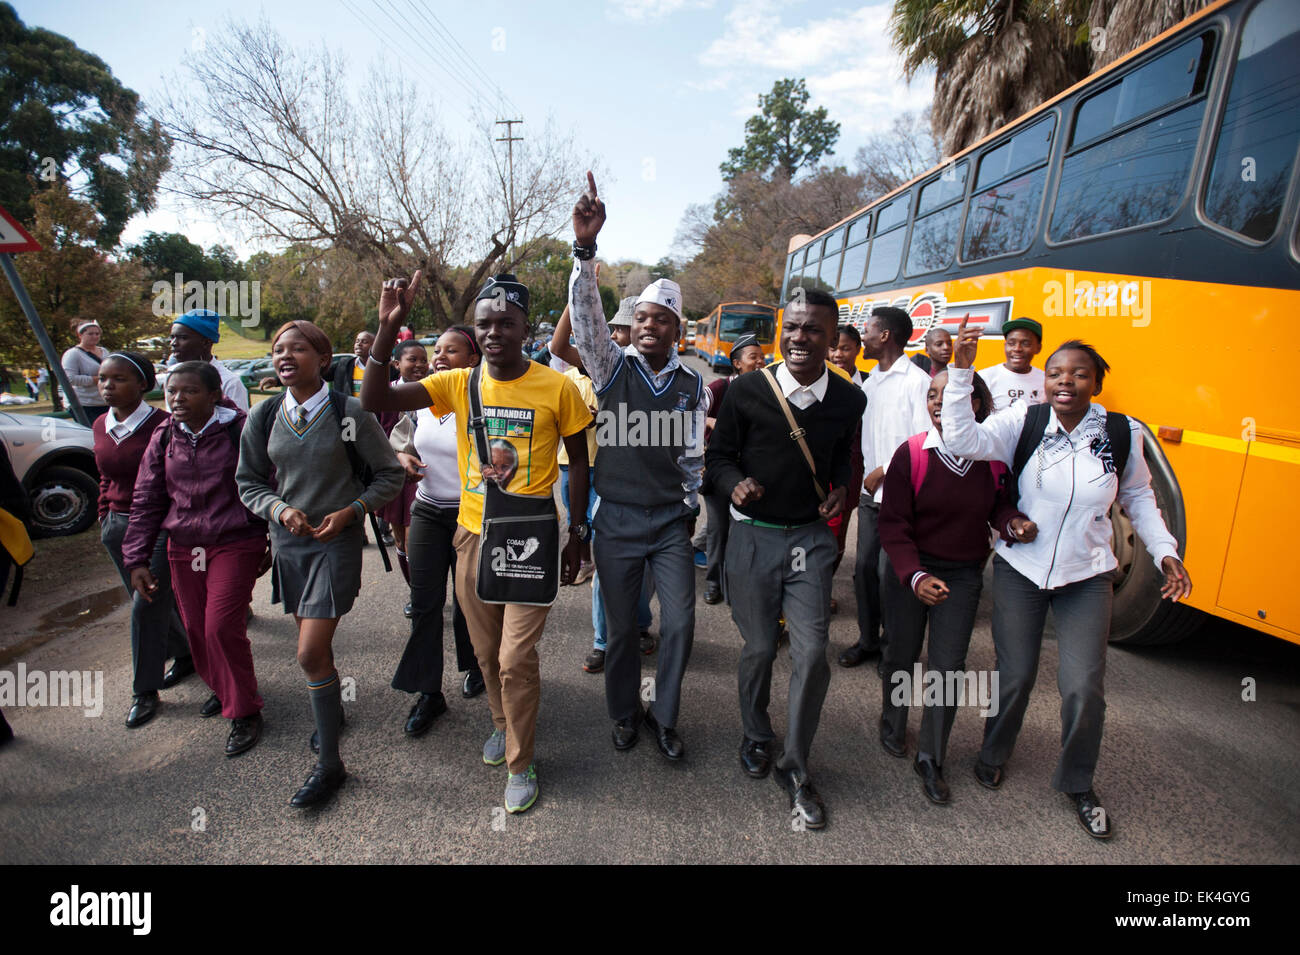 Los escolares que forman parte de la liga juvenil del ANC son vistos marchando.anc eagle jóvenes marcharon al Mail & Guardian oficinas para entregar un memorando, declarando que los medios de comunicación es el sesgo hacia el partido gobernante (ANC) Foto de stock